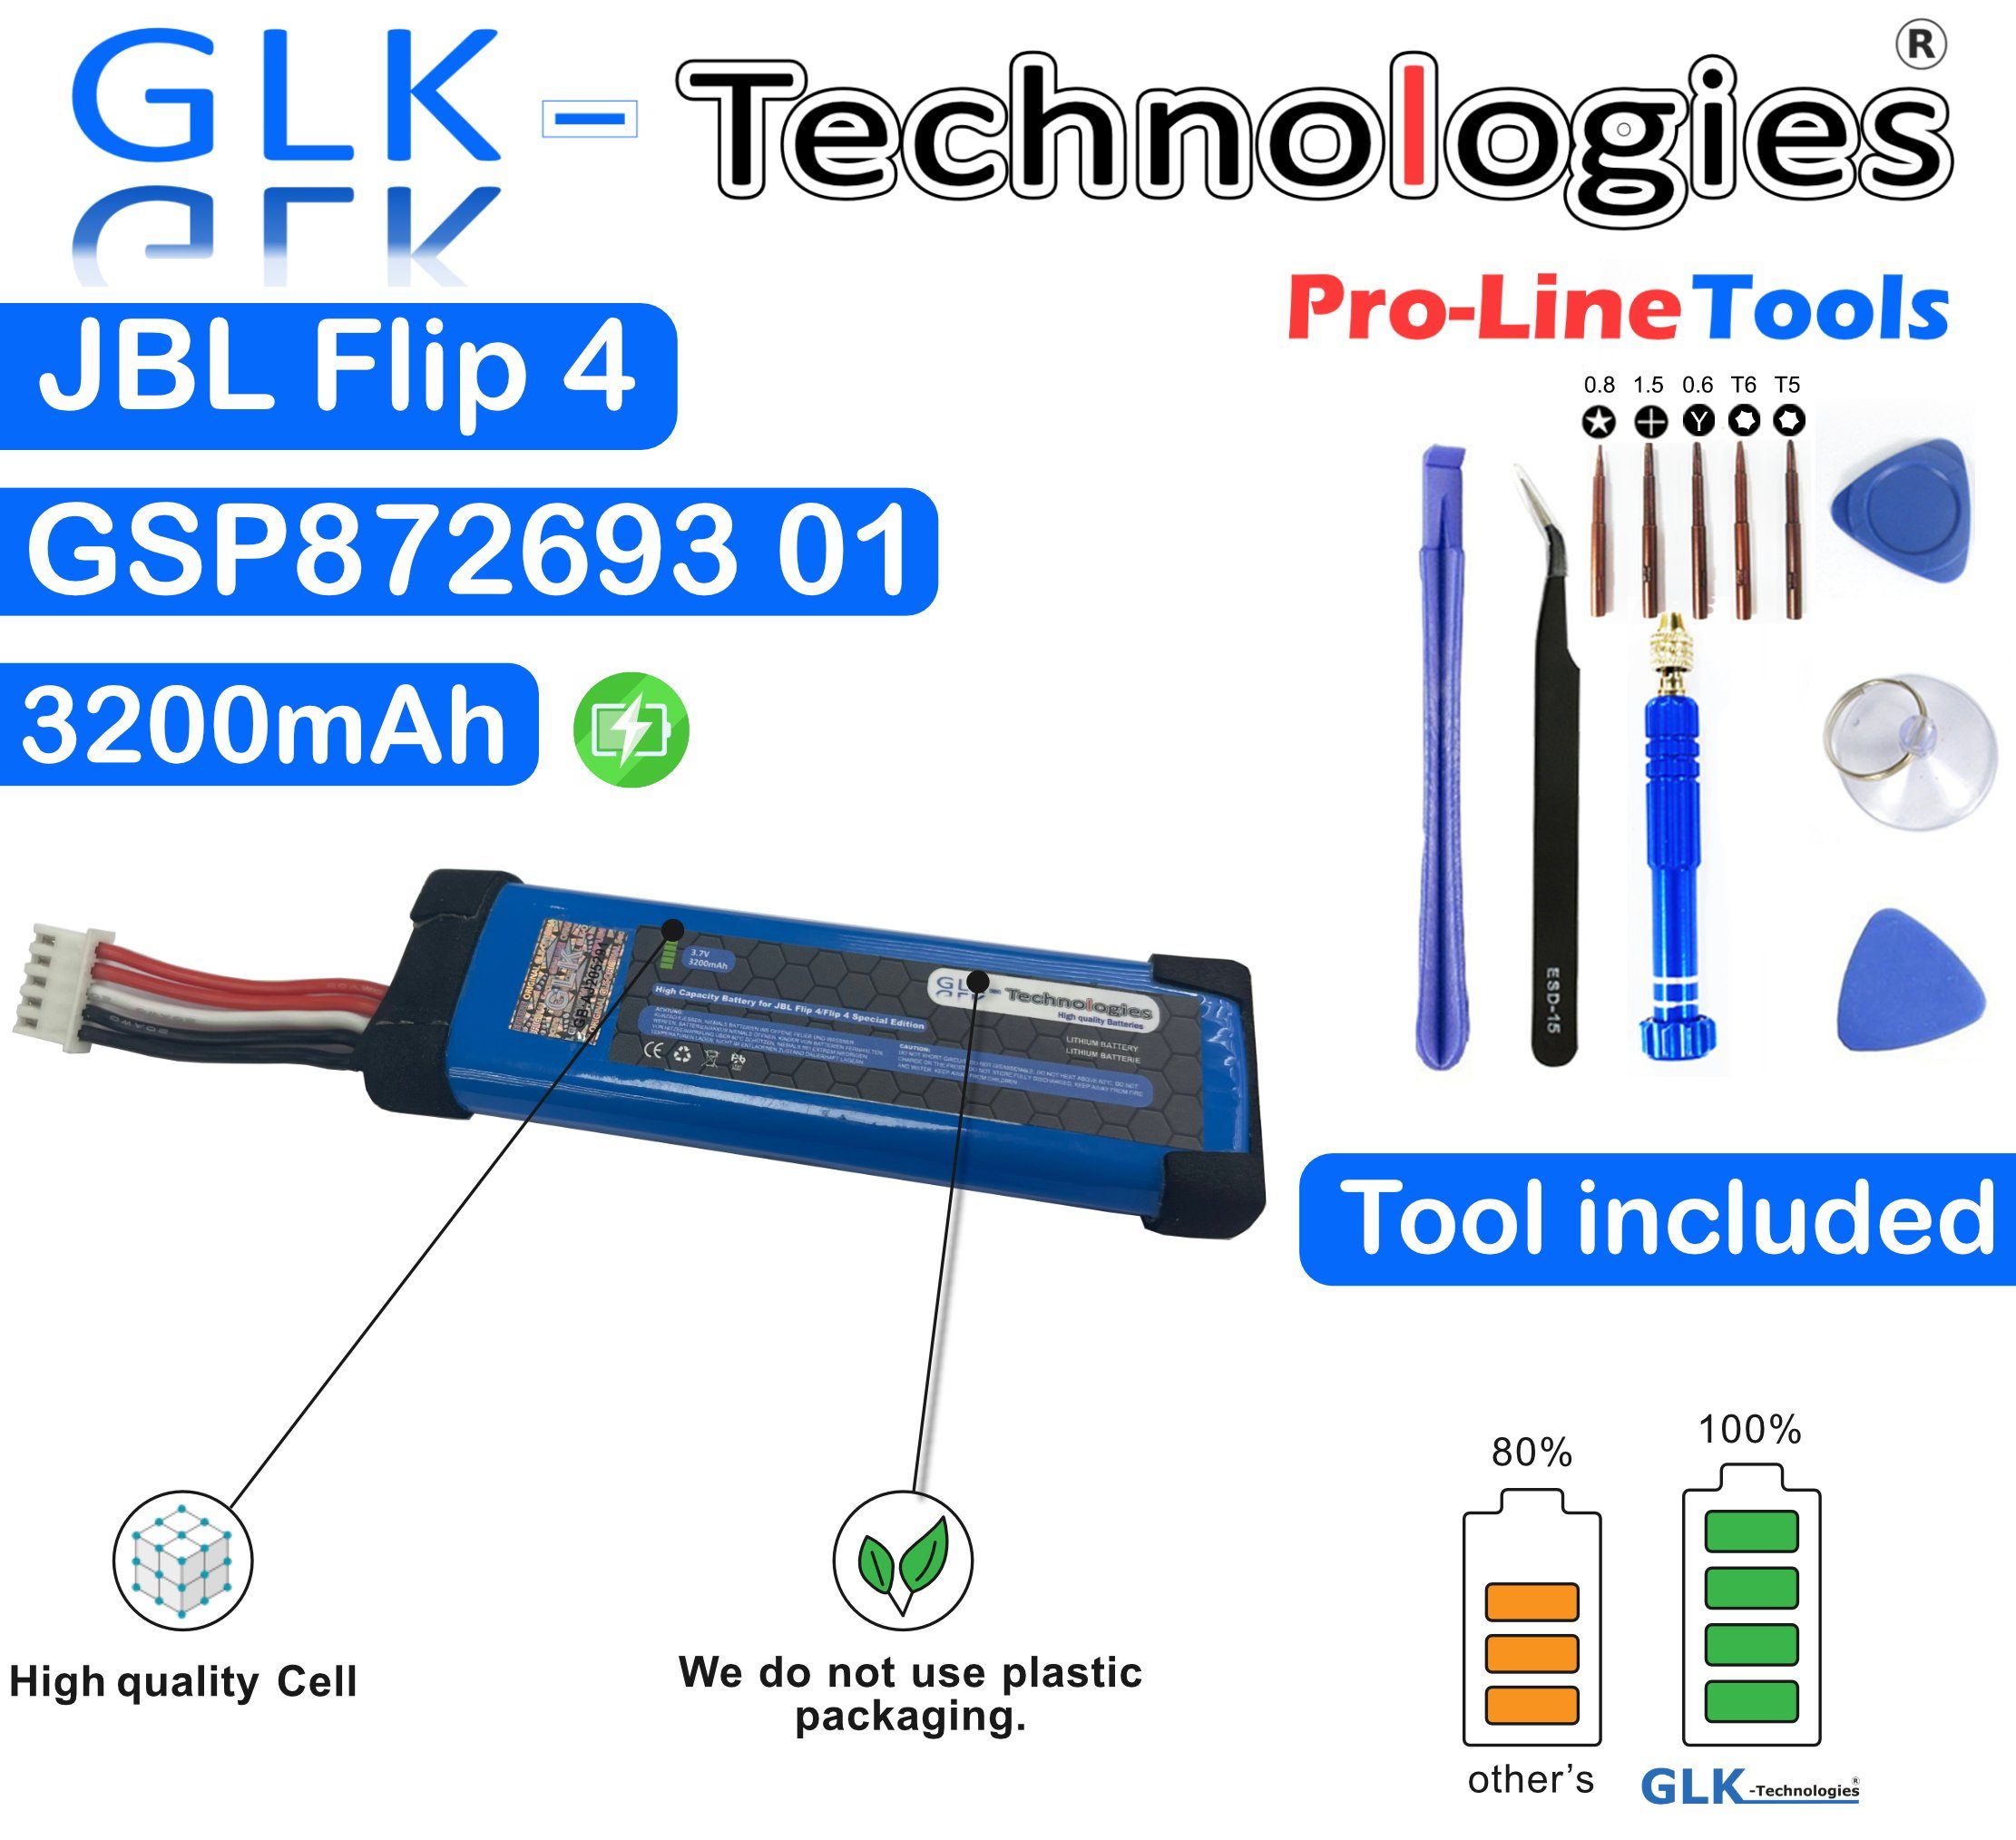 GLK-Technologies GLK Akku für JBL Flip 4 GSP872693 01 Bluetooth  Lautsprecher Akku